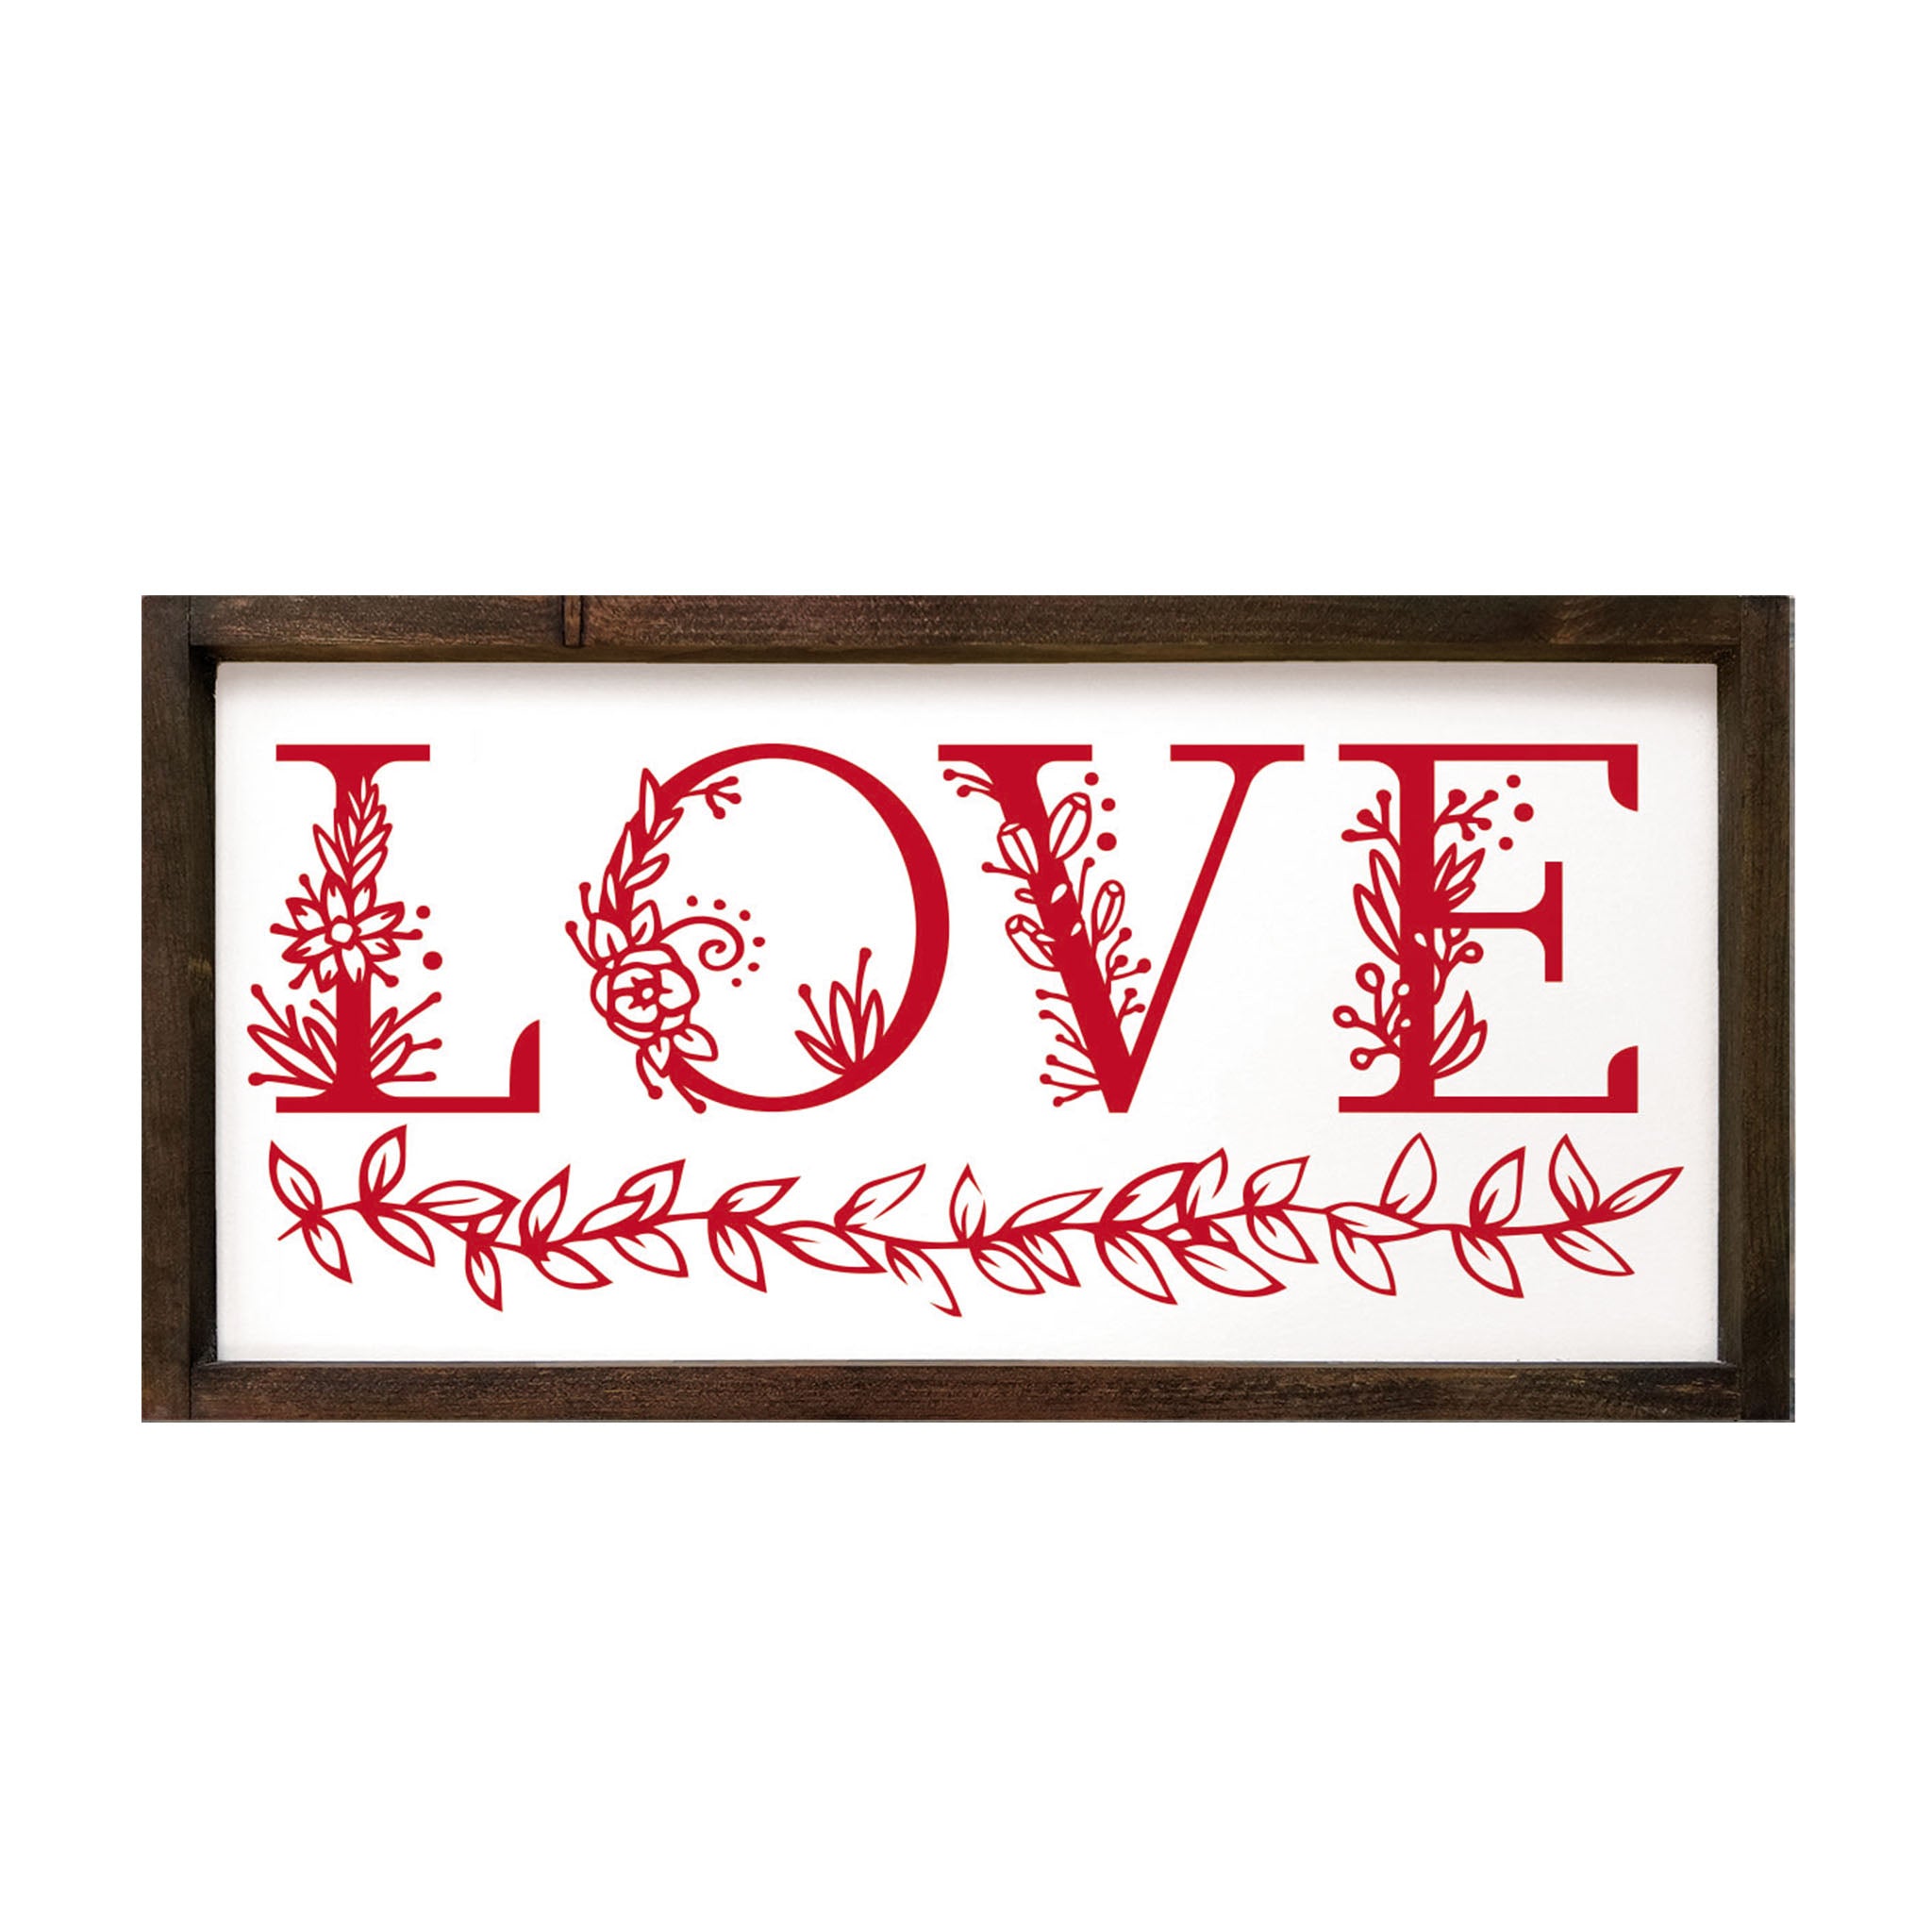 LOVE - Floral - Large Framed Wood Sign - 12